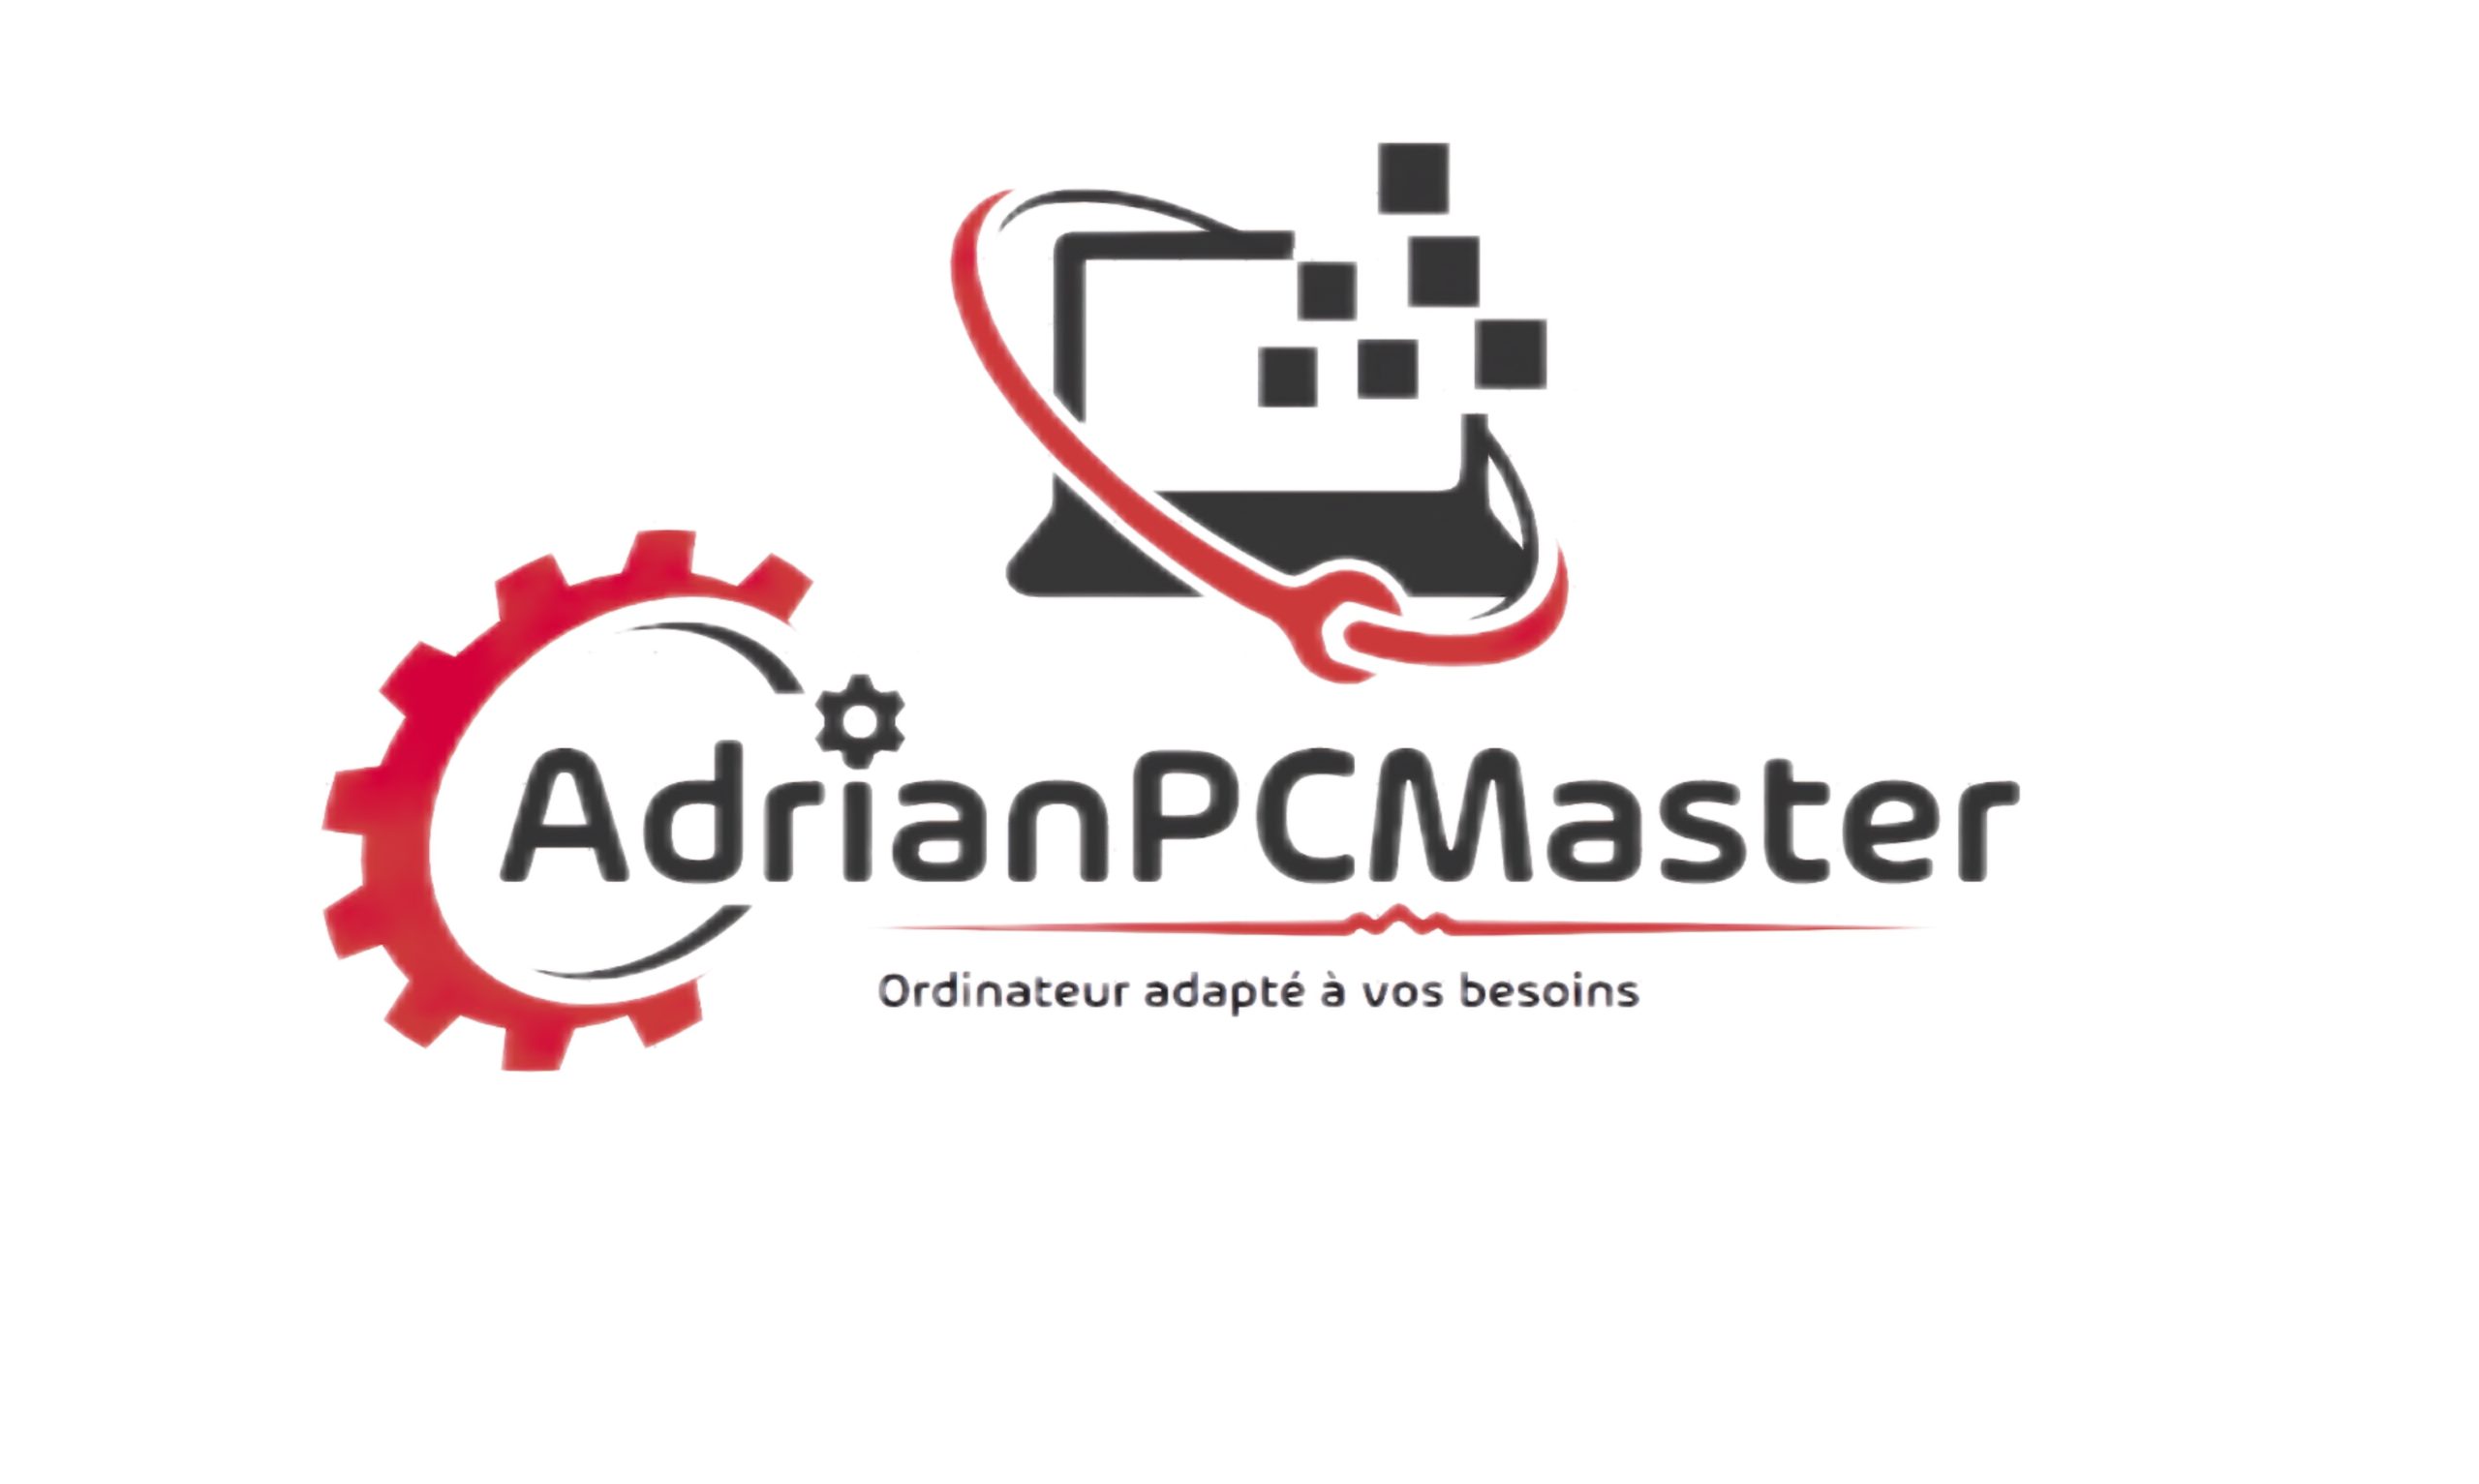 AdrianPCMaster